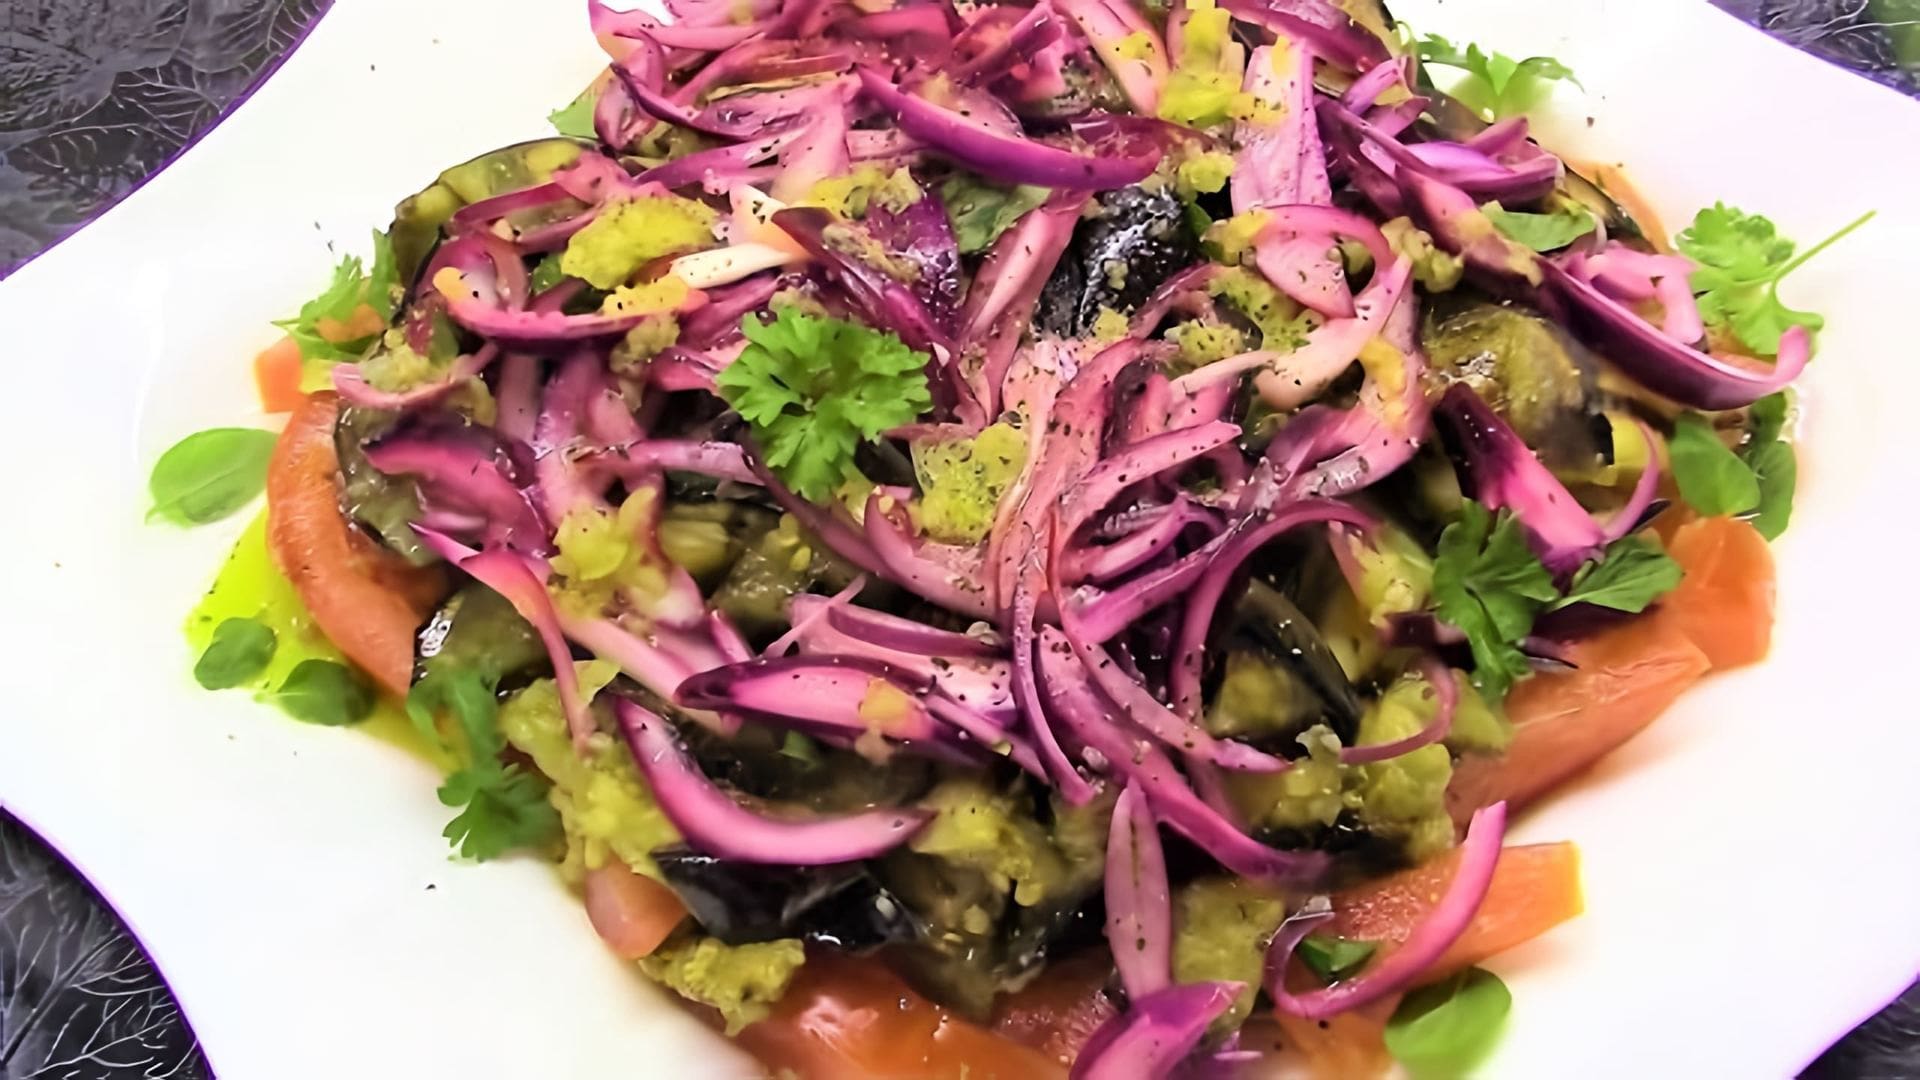 В этом видео демонстрируется процесс приготовления легкого и освежающего салата из баклажанов с помидорами